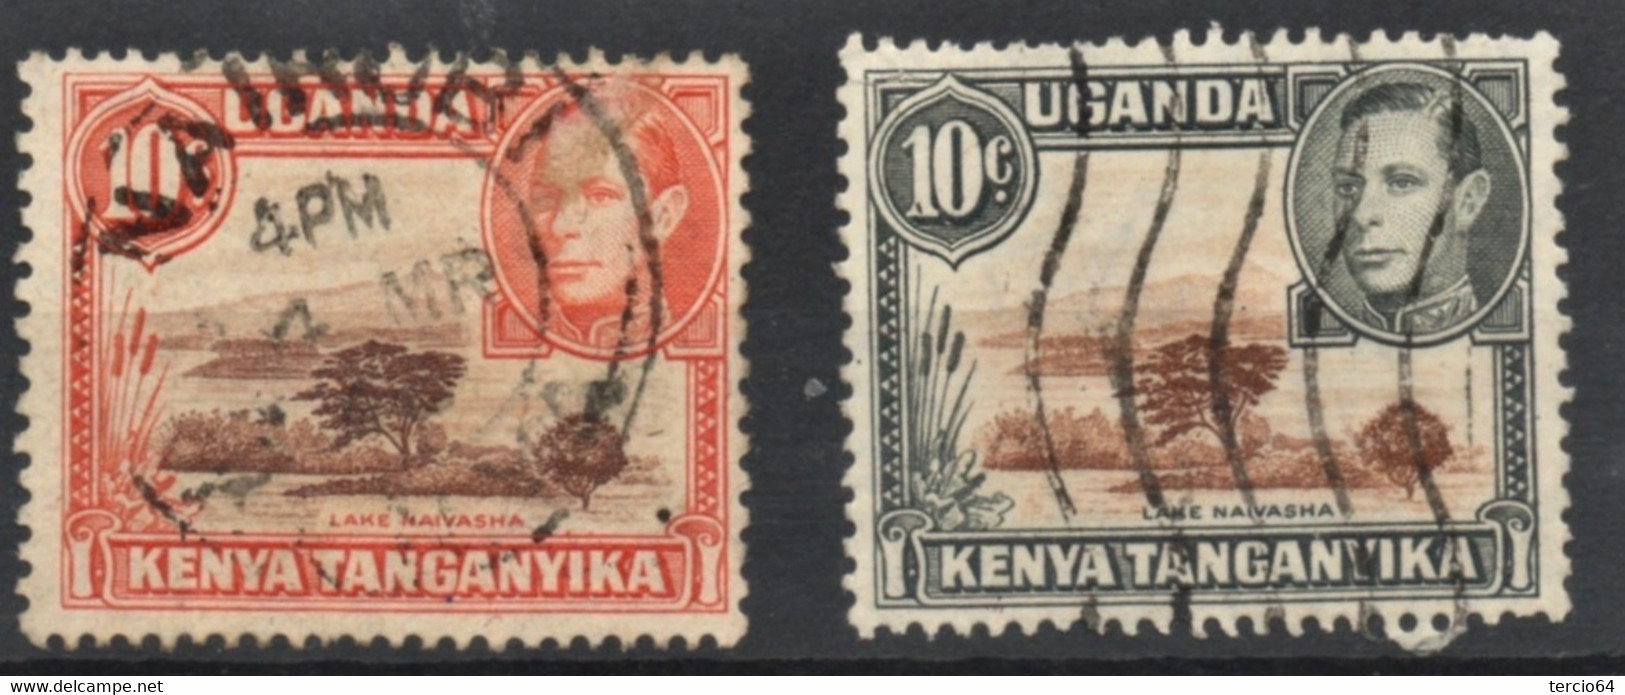 GREAT BRITAIN, Grande Bretagne Colonies Kenya, Uganda, Ouganda, Tanganyika, George VI, Lac, Lake 2 Timbres 2 Stamps - Kenya, Uganda & Tanganyika